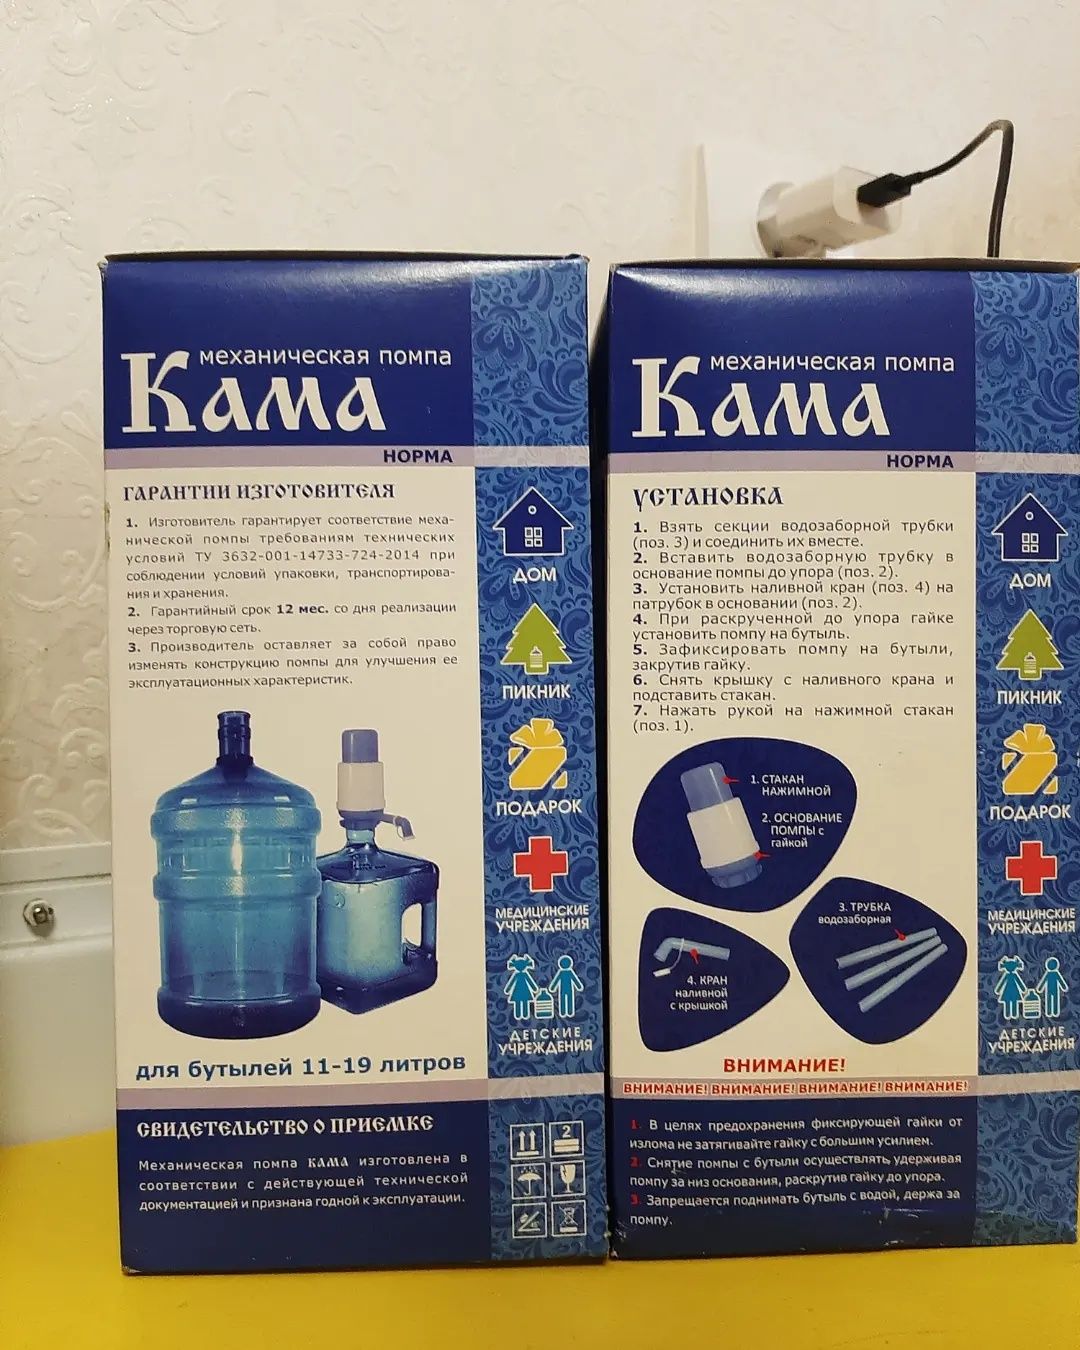 Для невестки механическая помпа для воды Кама Норма (Россия)